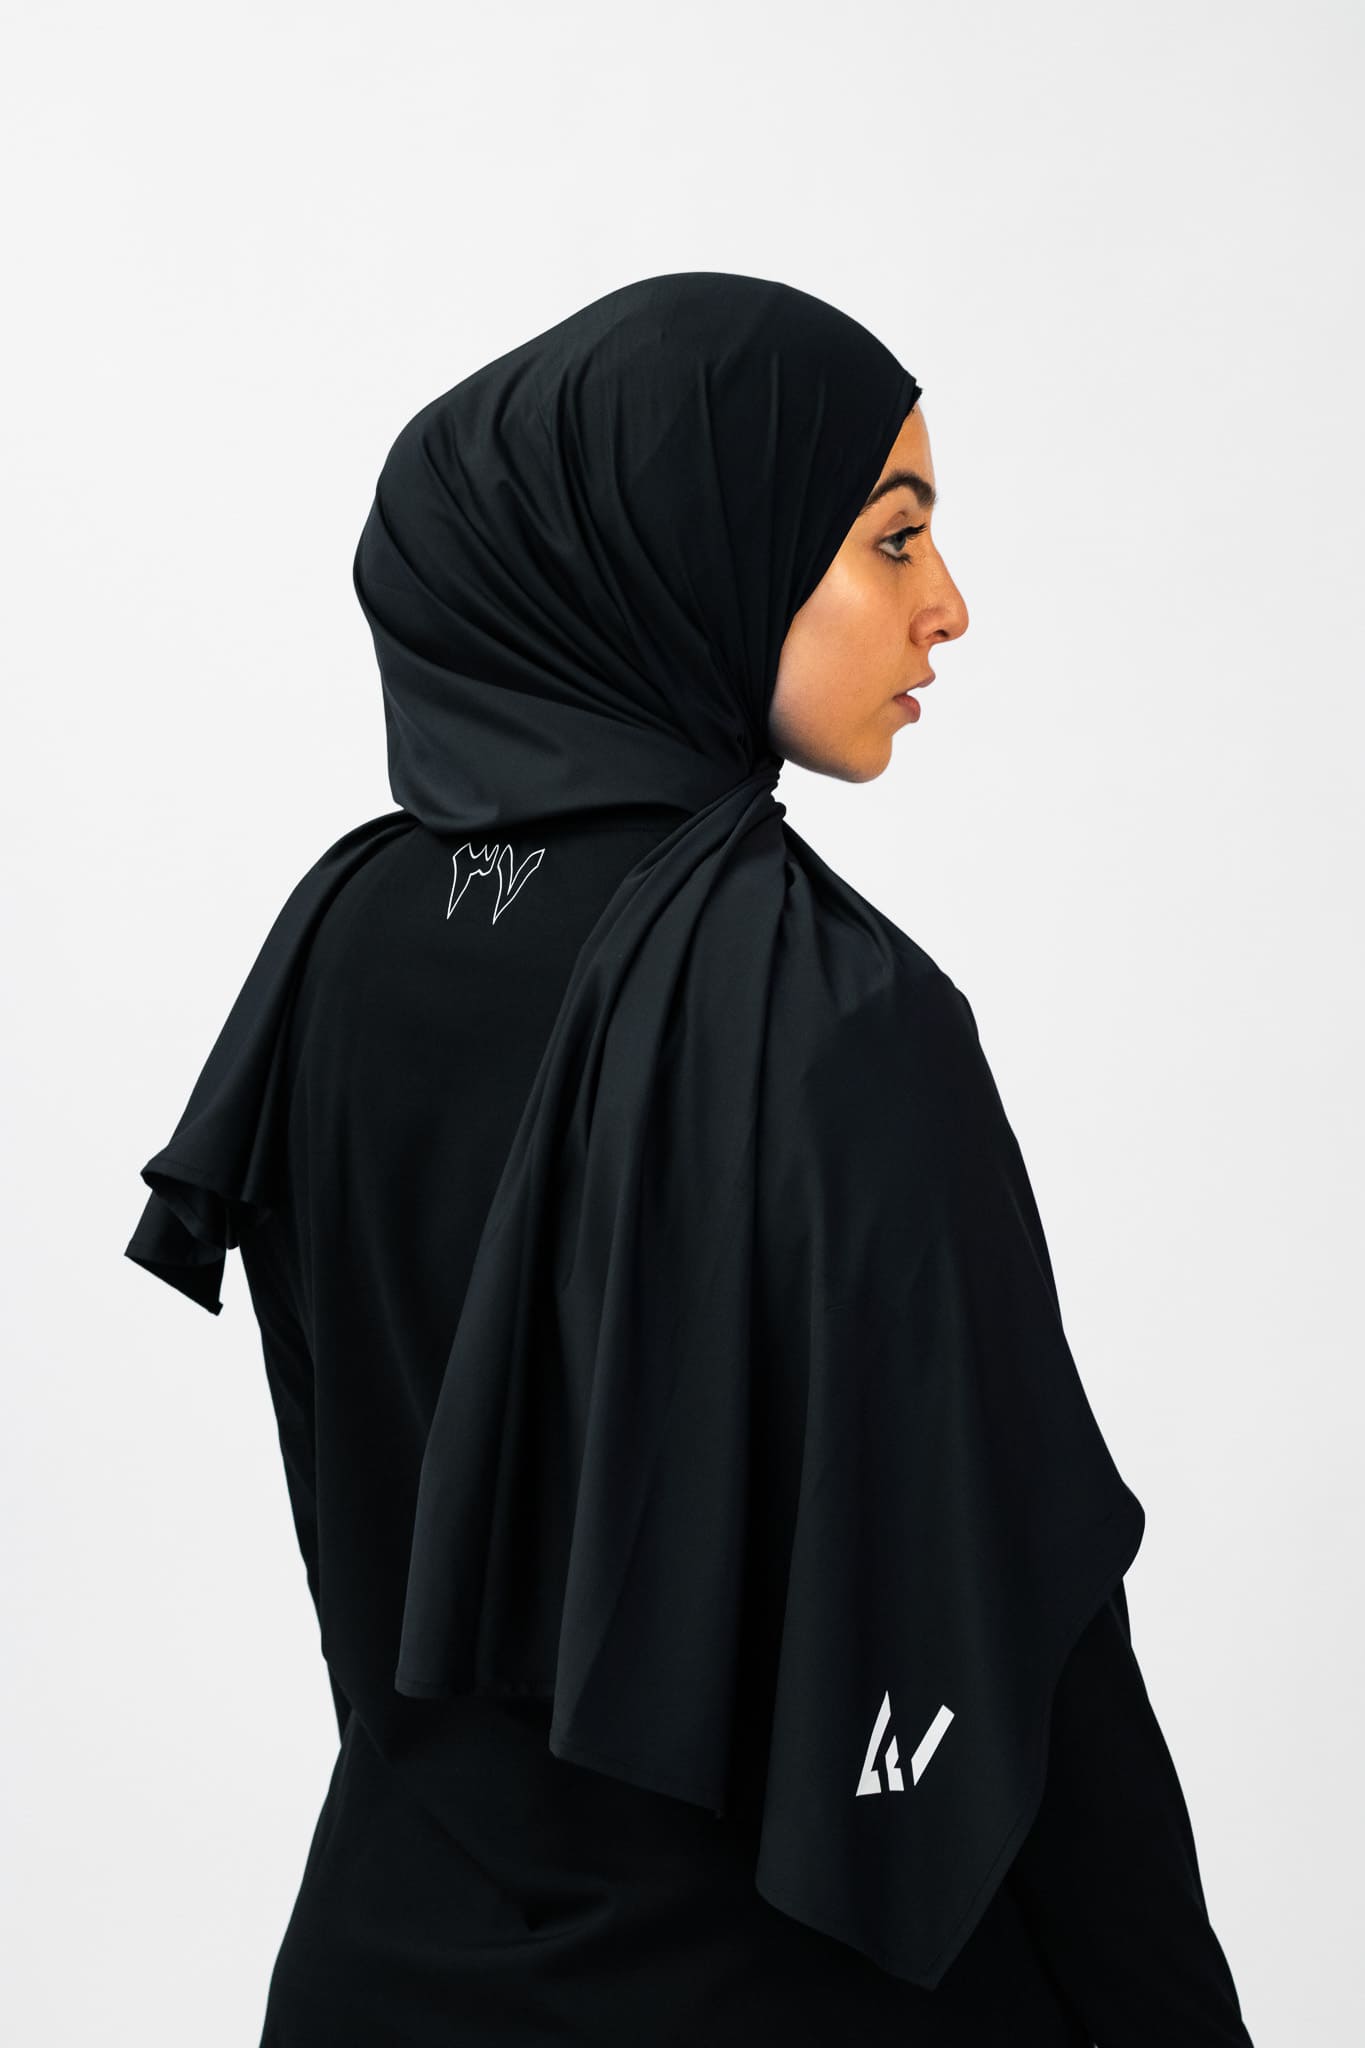 Sports Hijab - Black